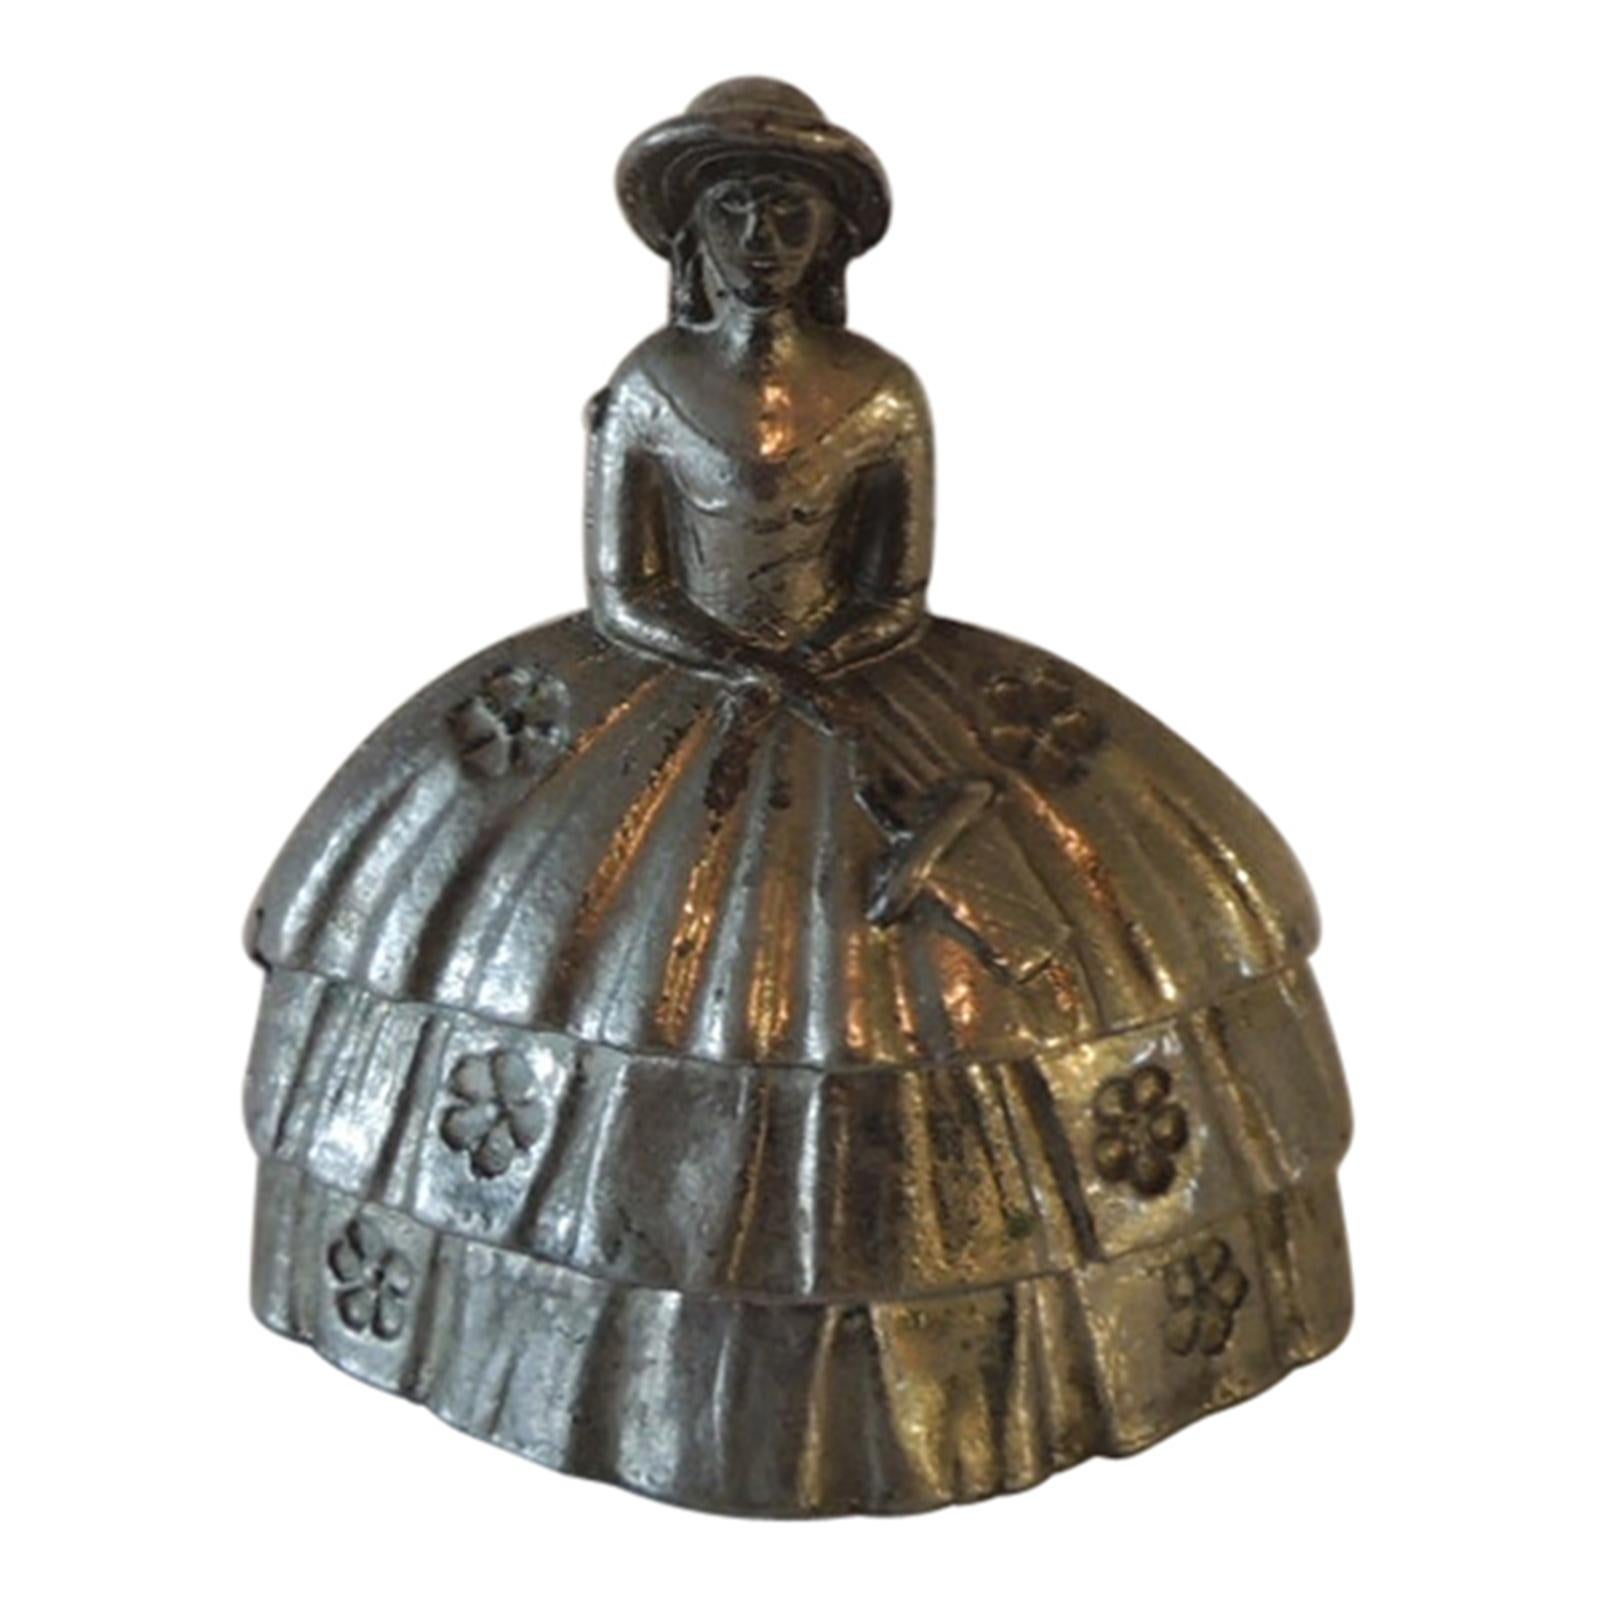 Pewter Table Bell of Infanta Margarita Teresa Juan Bautista Martine Del Mazo